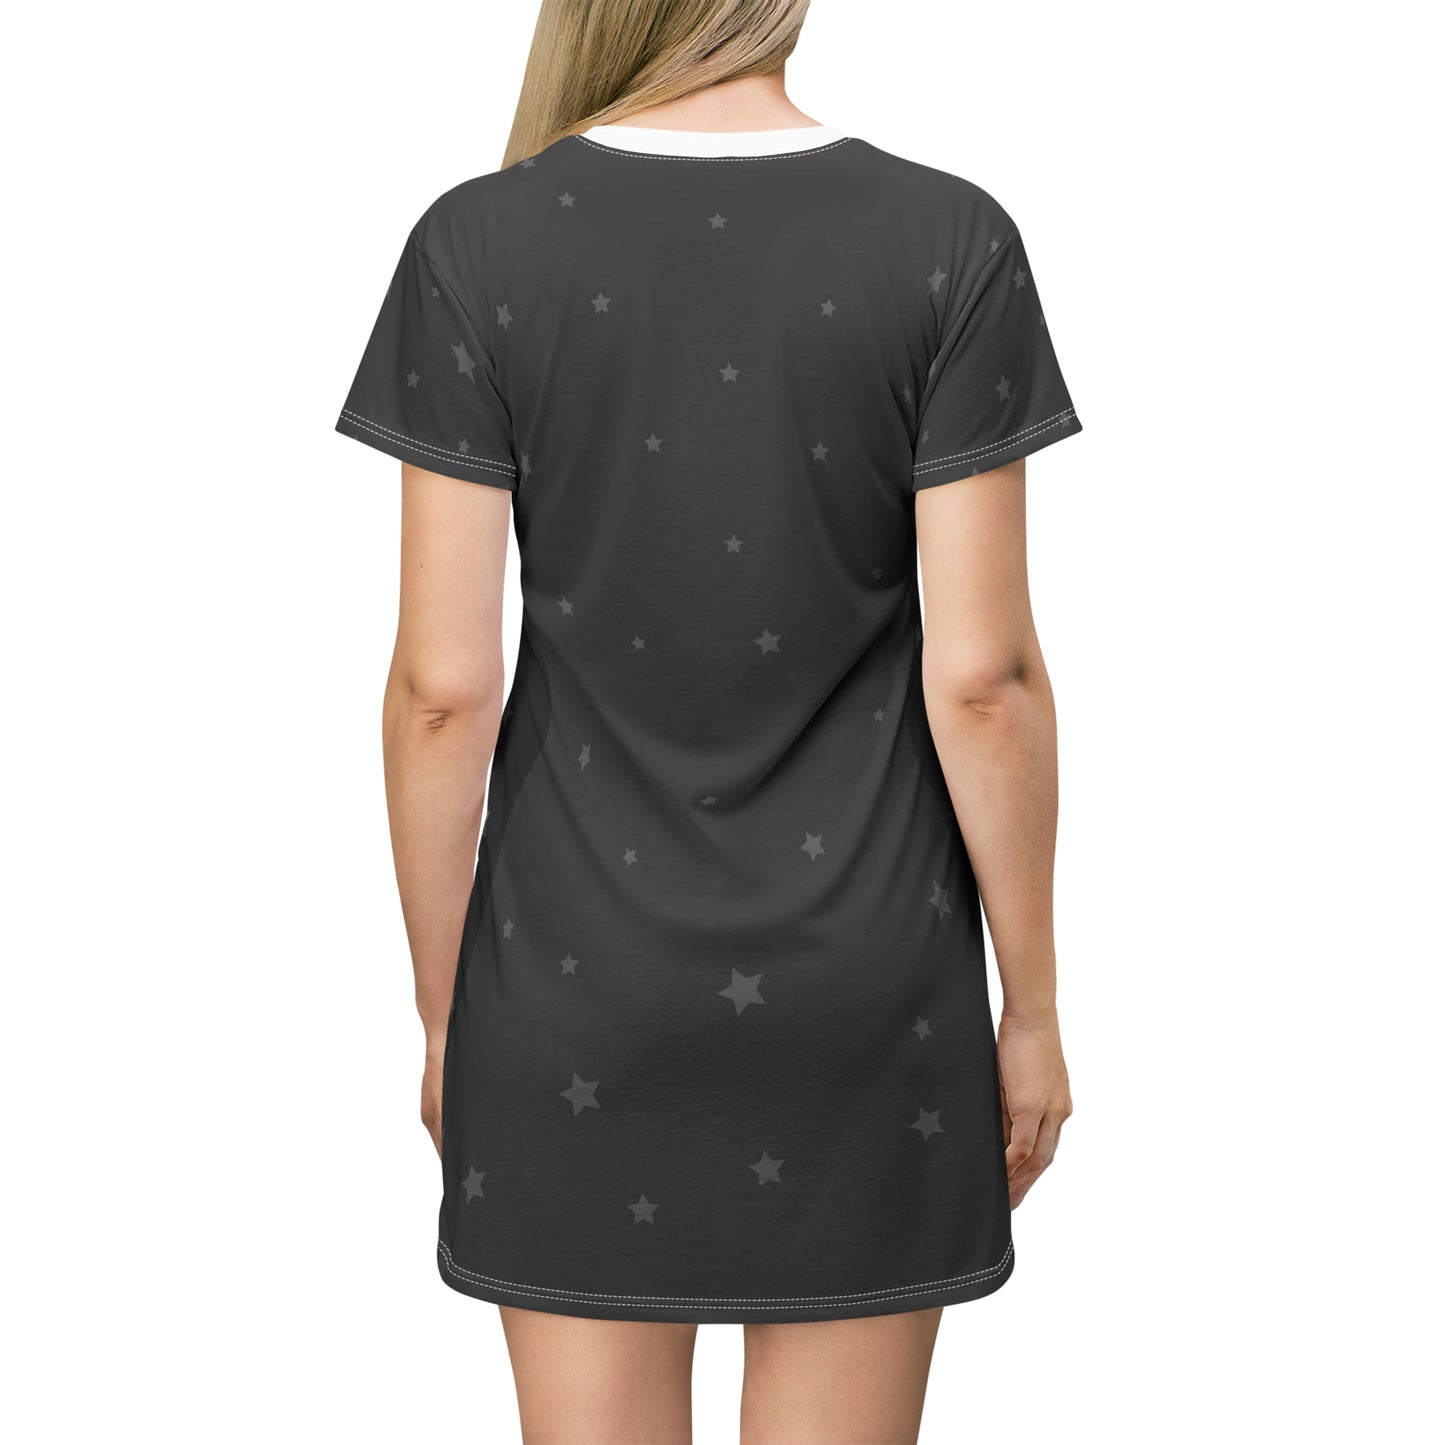 Fatherless Behavior - T-Shirt Dress (All-Over-Print)